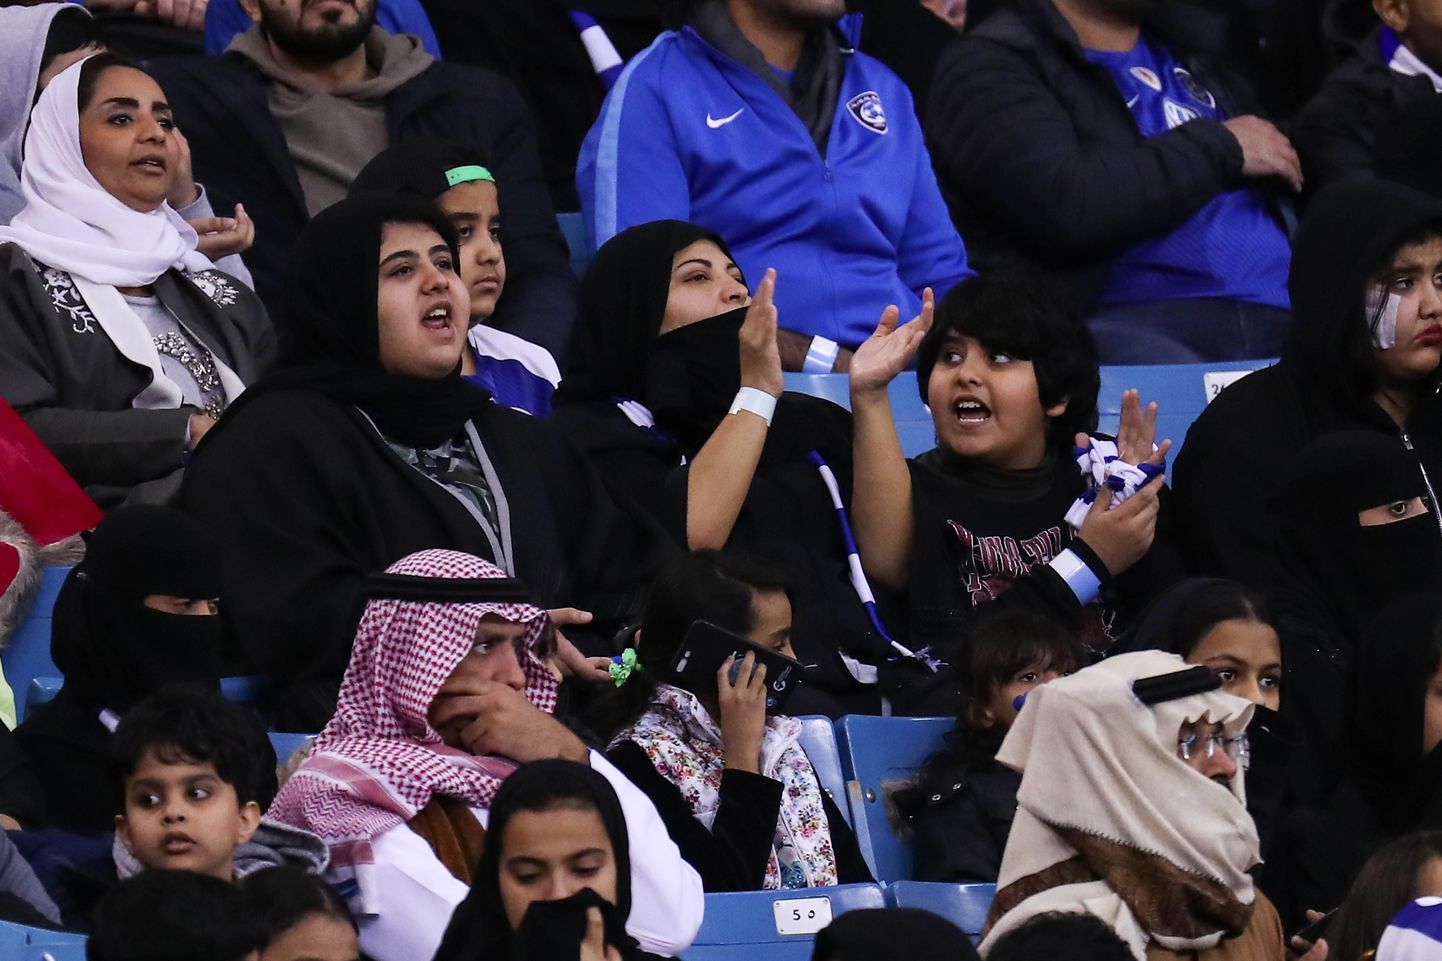 Saudi Araabias võivad naised jalgpallimatše staadionil vaatamas käia alates jaanuarist 2018.